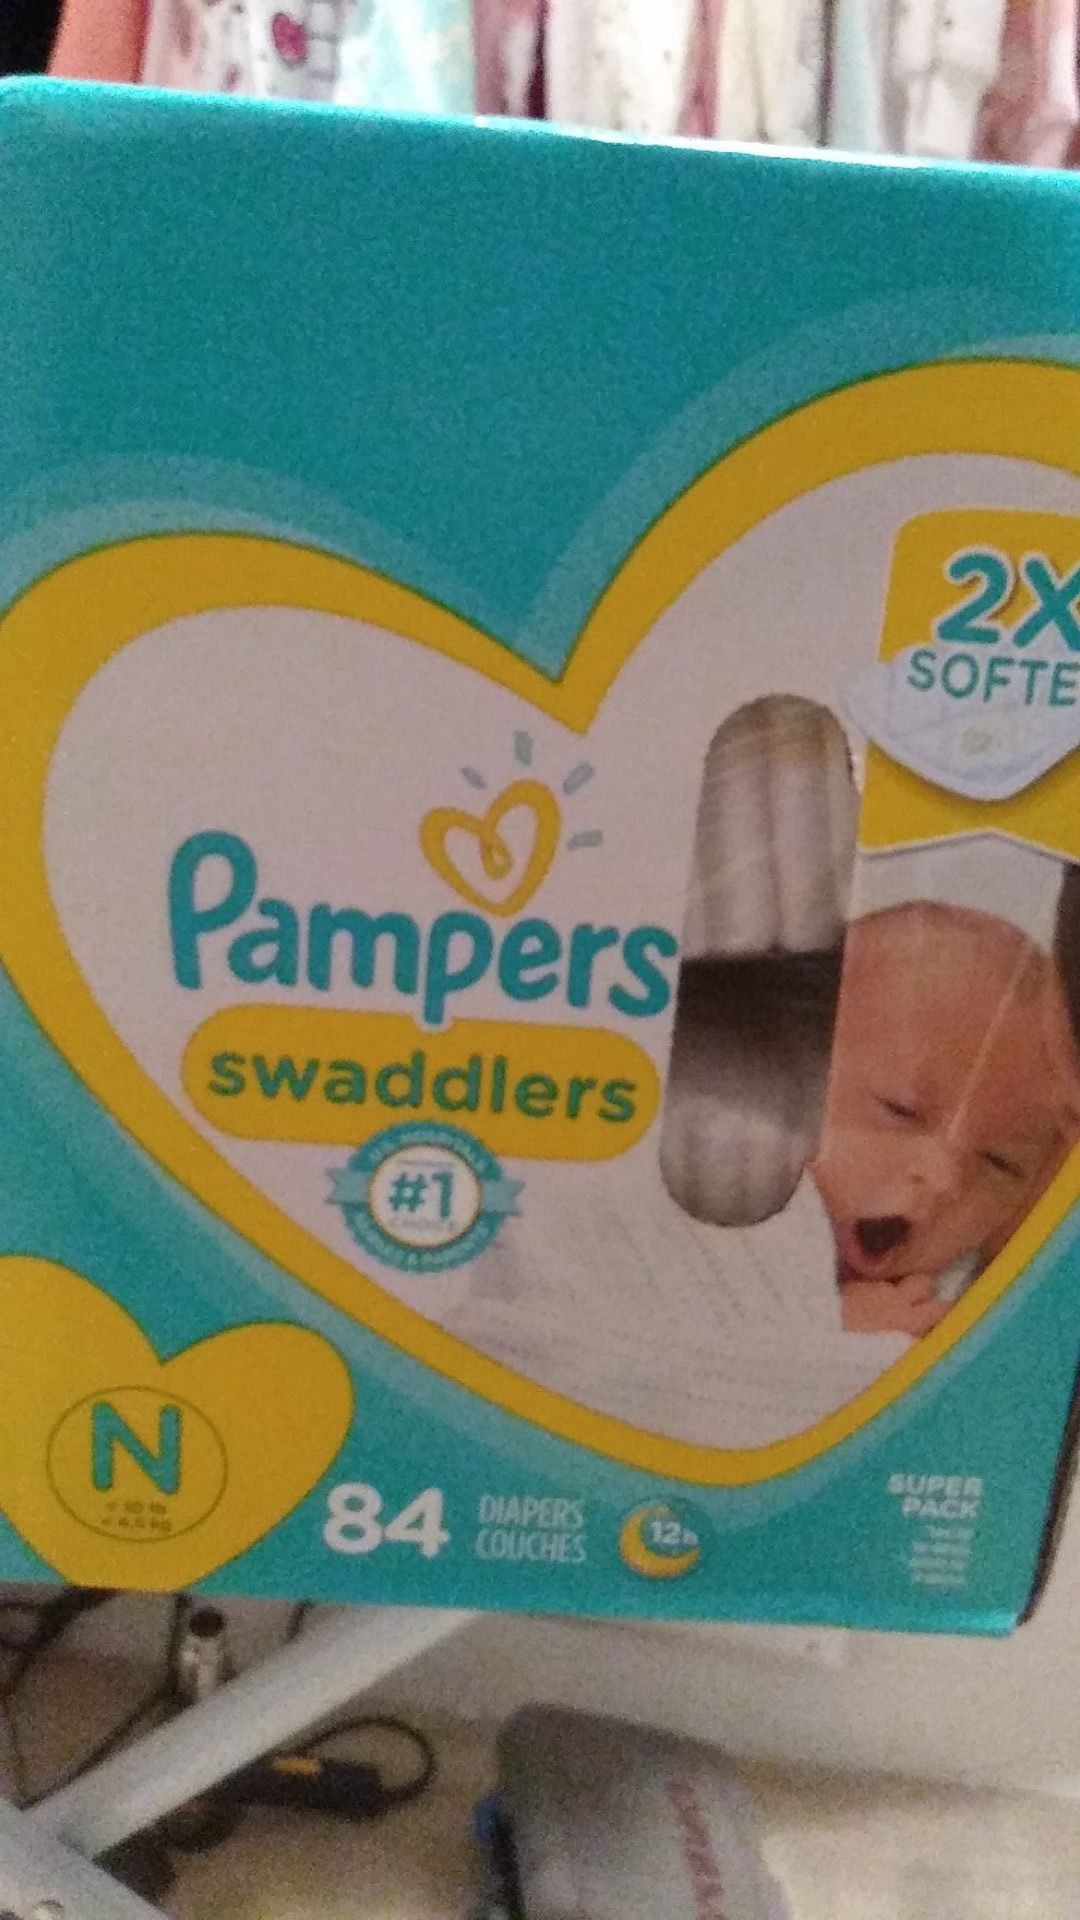 Brand new newborn diapers